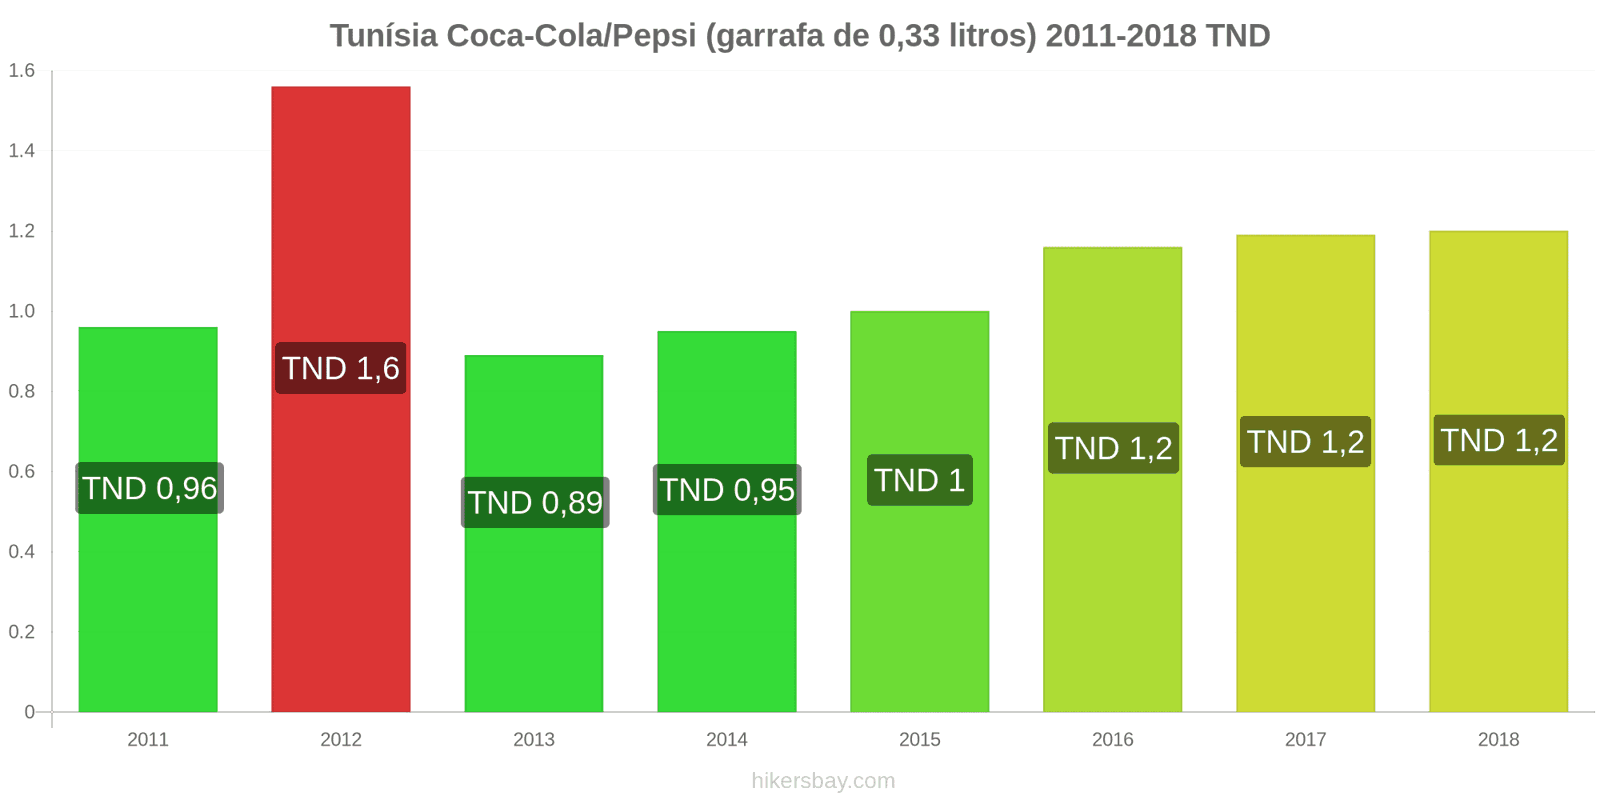 Tunísia mudanças de preços Coca-Cola/Pepsi (garrafa de 0.33 litros) hikersbay.com